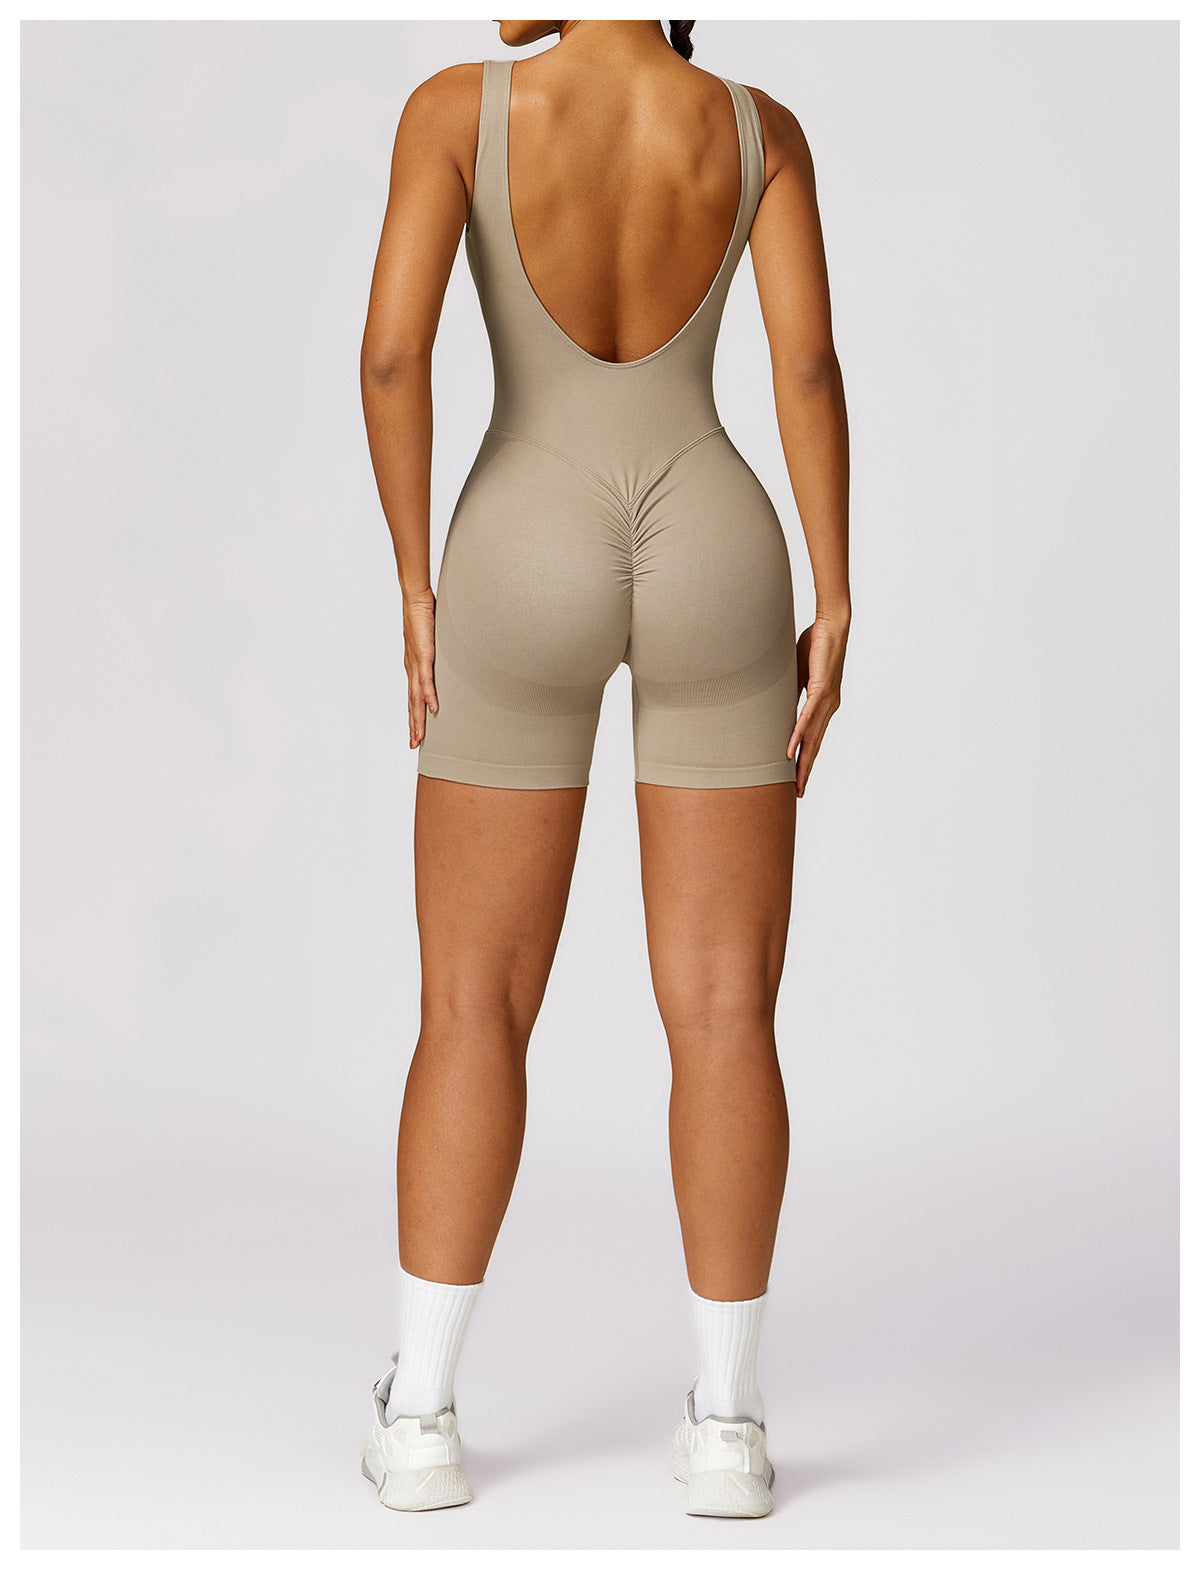 Clarisse™ - Yoga Bodysuit Sportswear